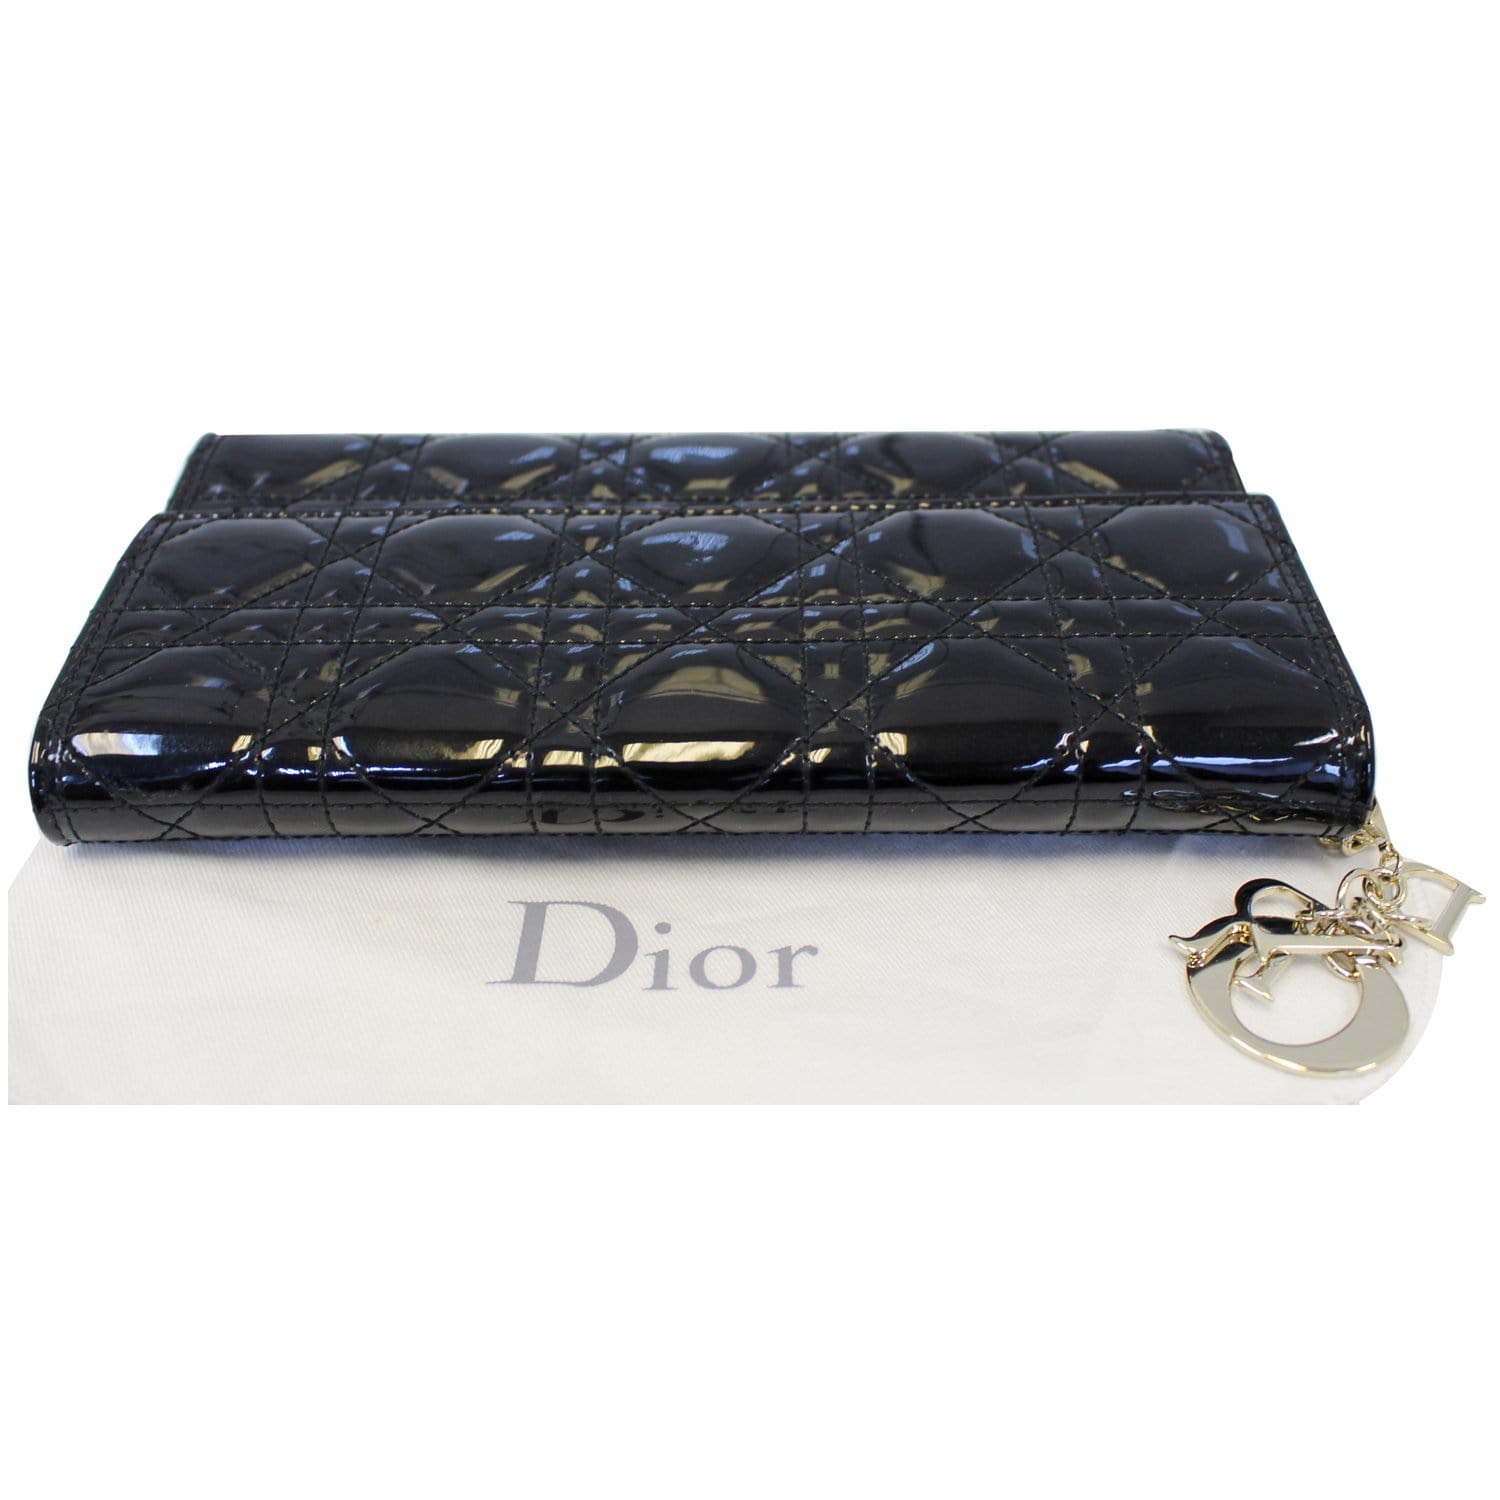 Dior - Lady Dior Lambskin Clutch in Black